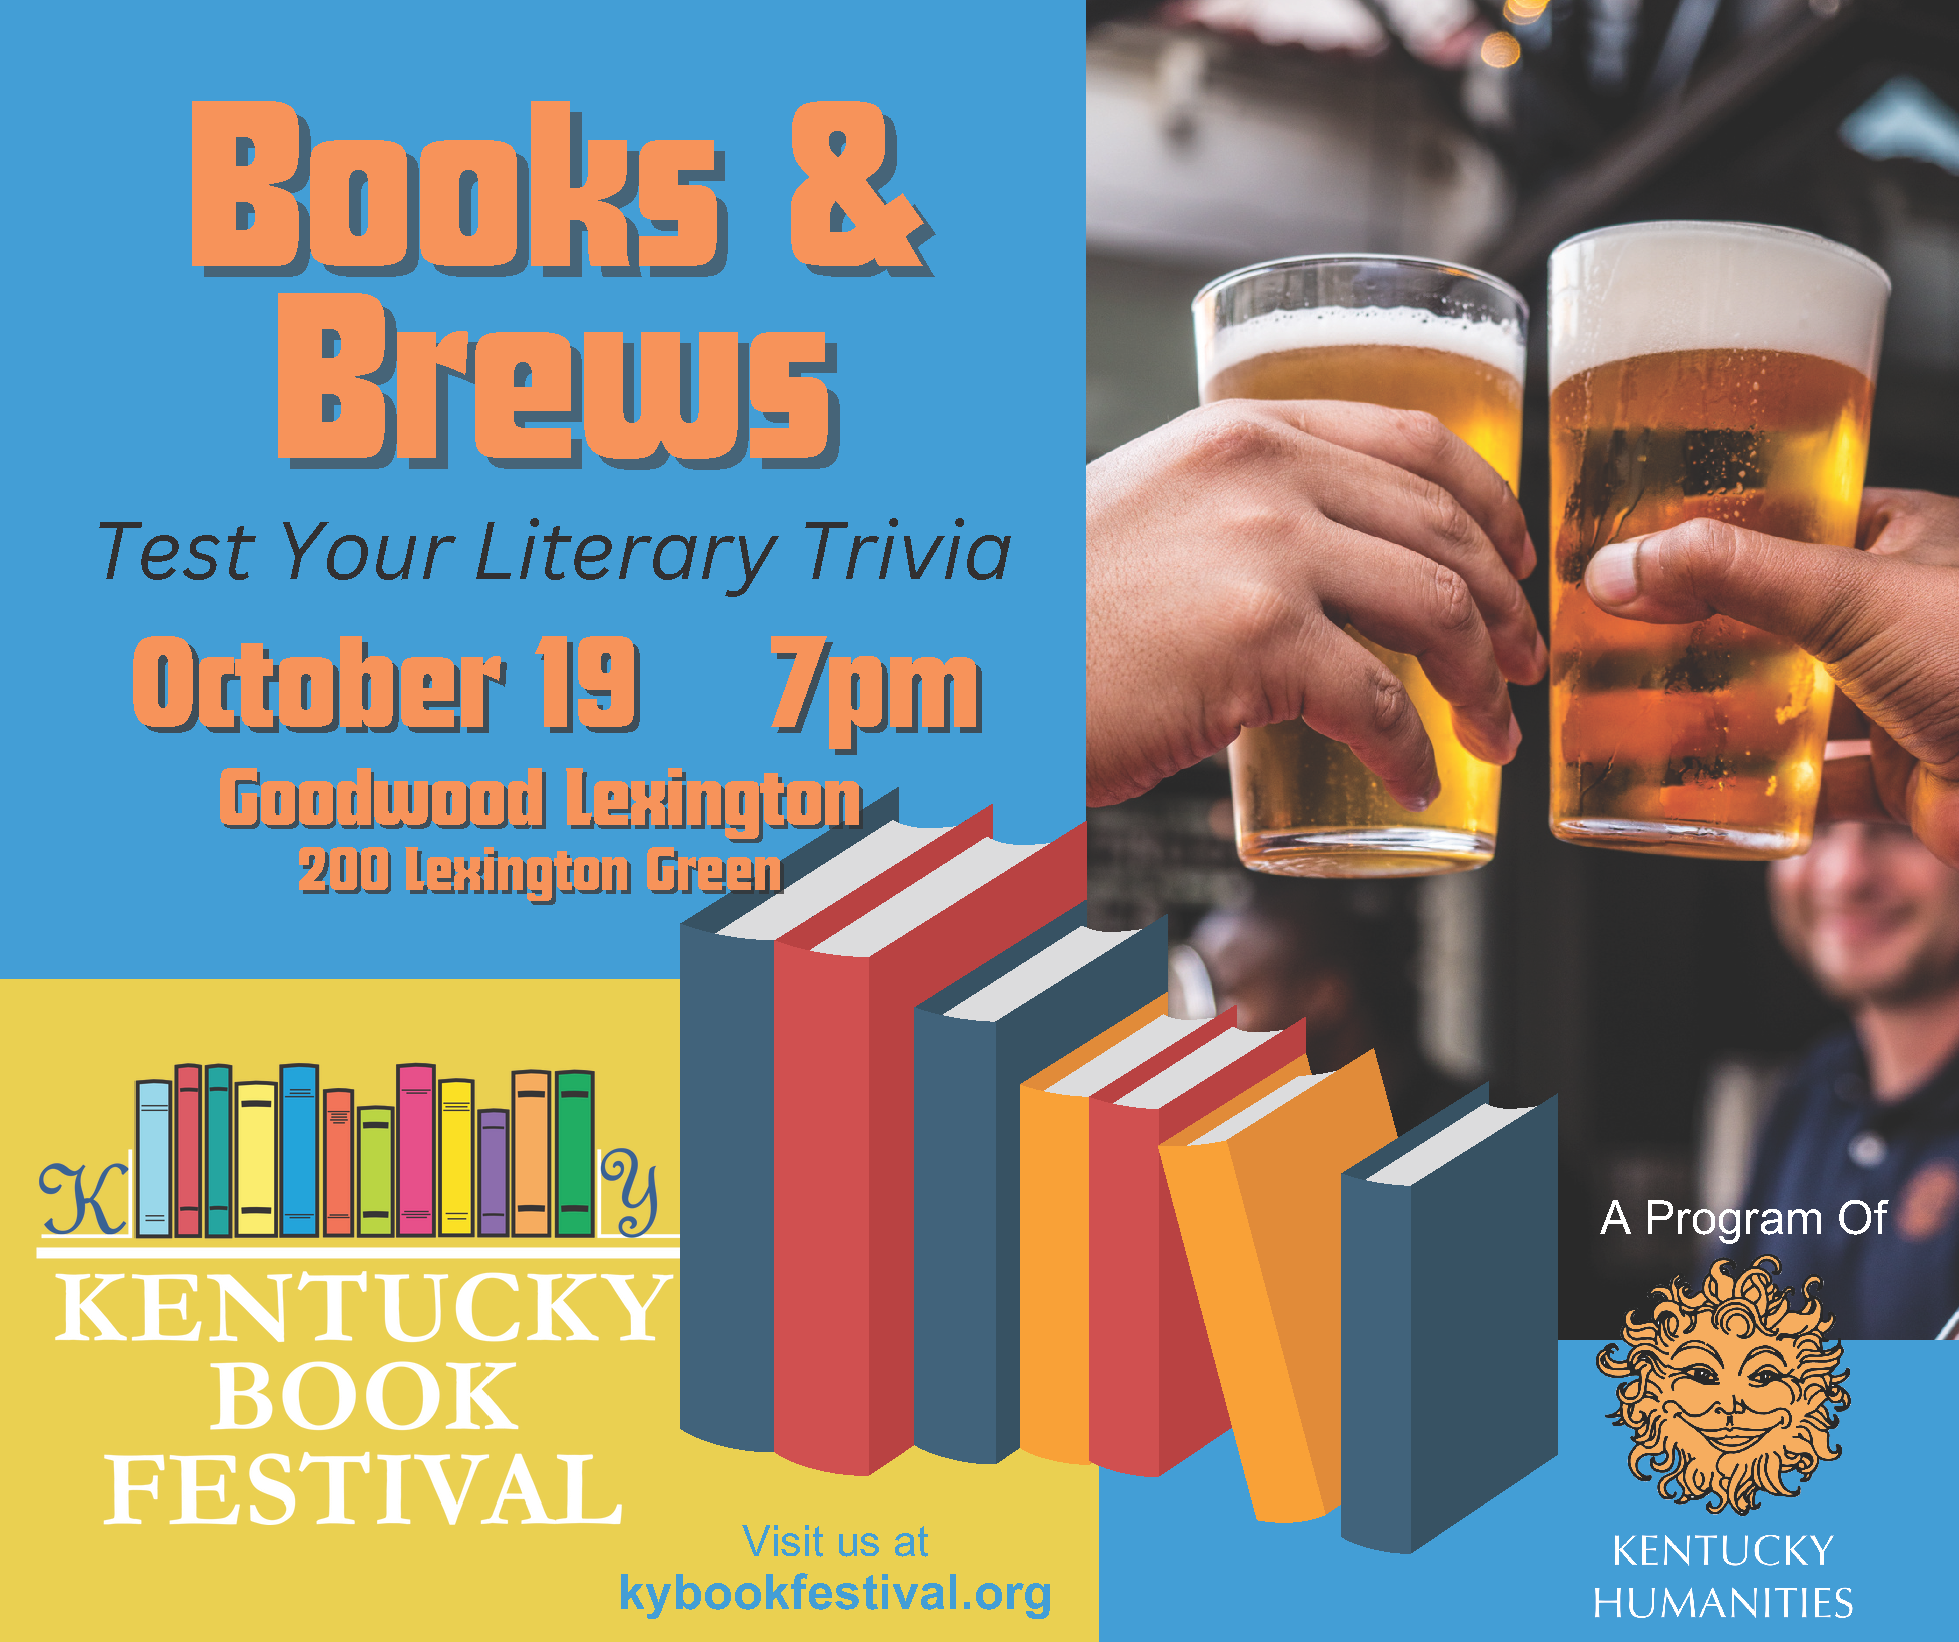 Books & Brews Trivia at Goodwood Lexington